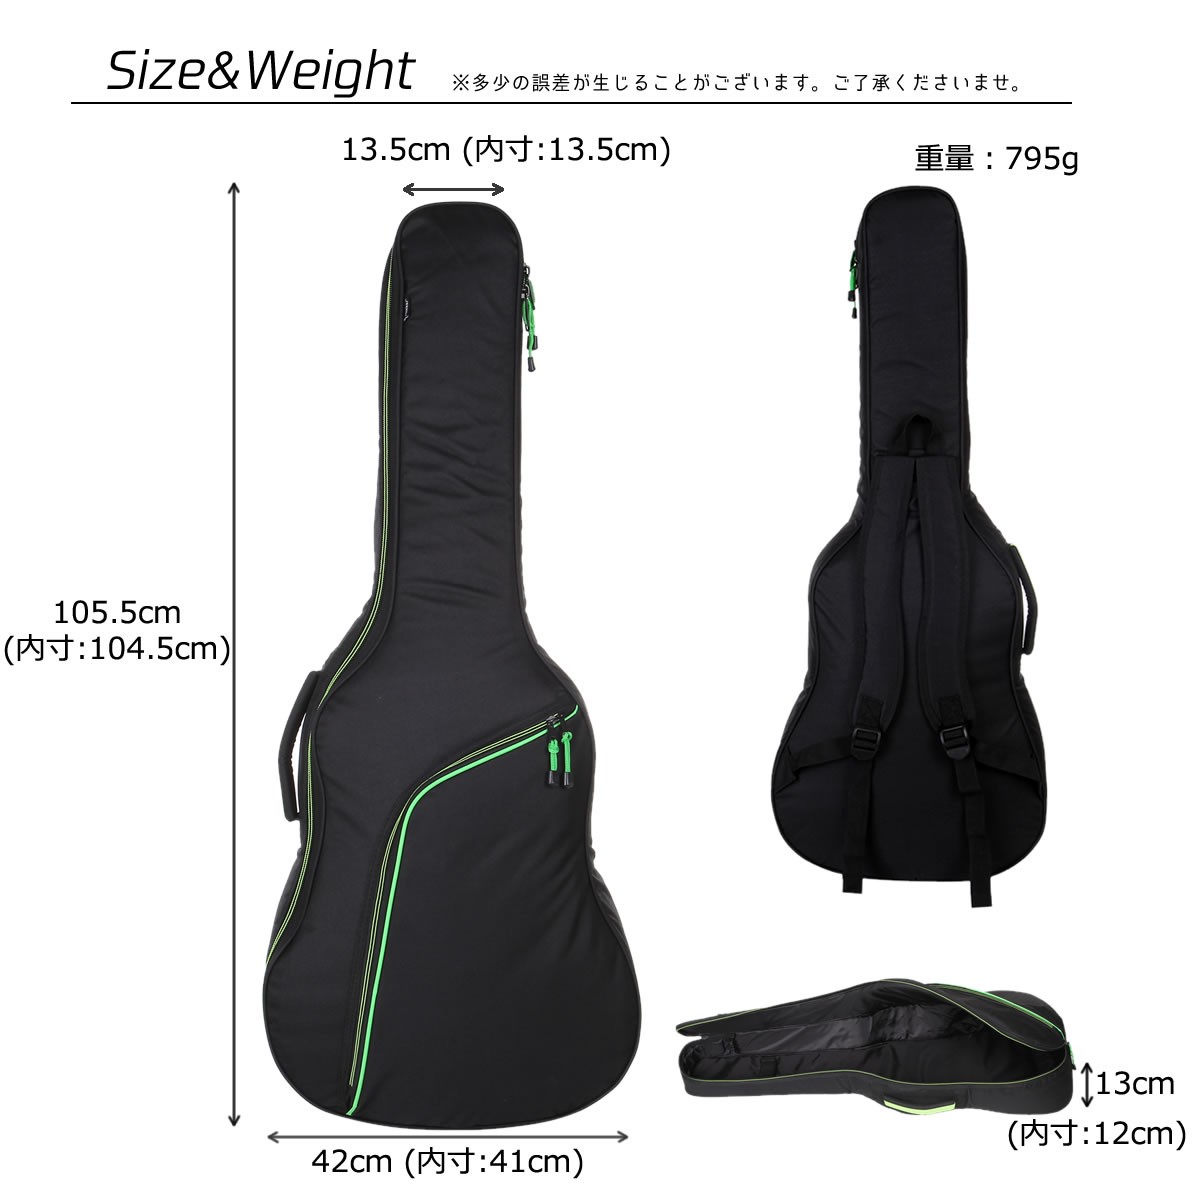 スタイリッシュなギターケース アコースティック ギターケース ソフトケース ギグバッグ クッション付き 軽量 キャリーケース キャリーバッグ  MIGC-07